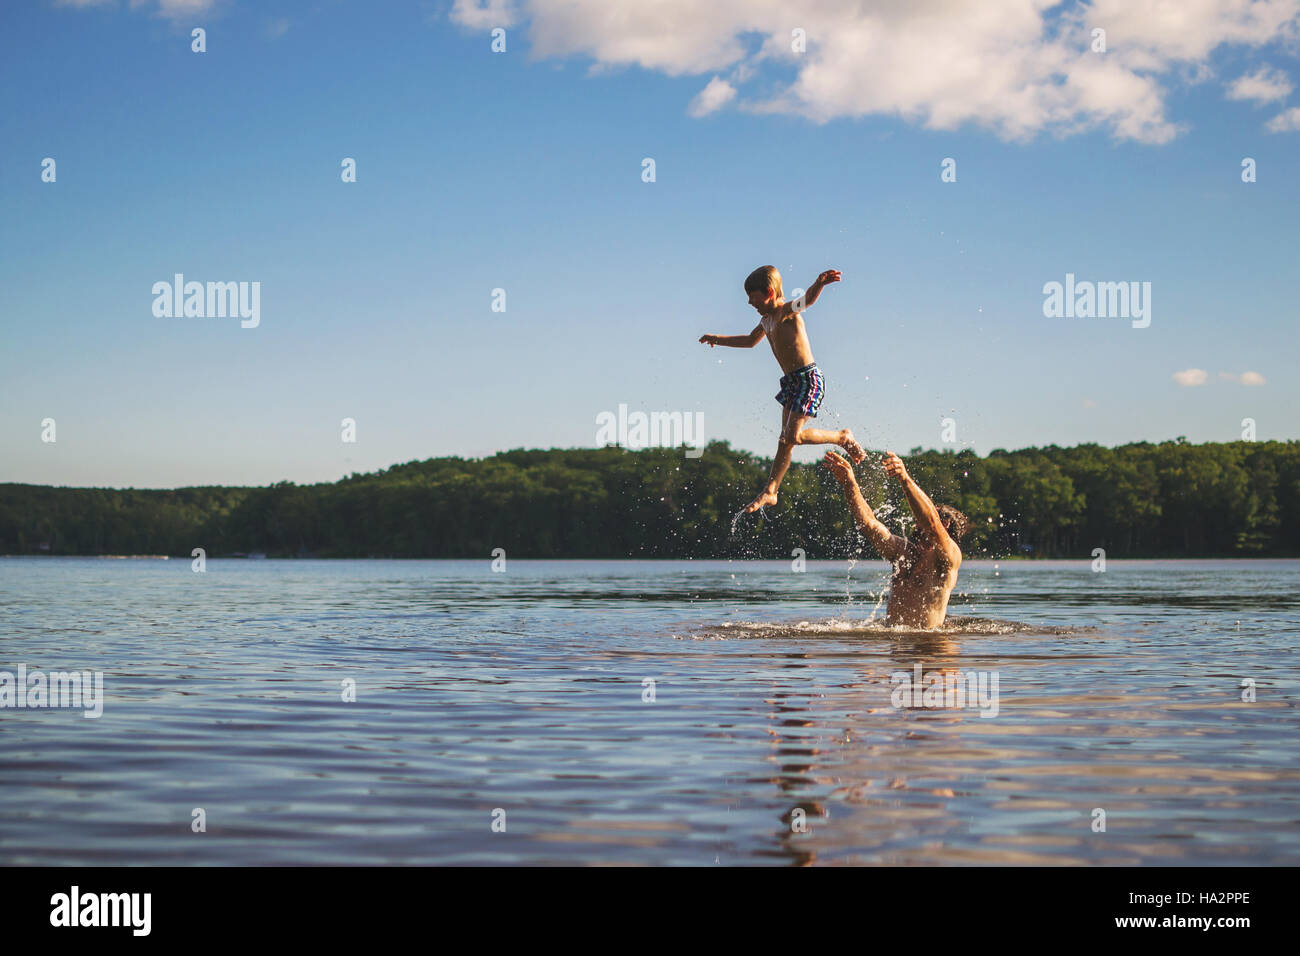 Vater Sohn in der Luft stehend in einem See zu werfen Stockfoto